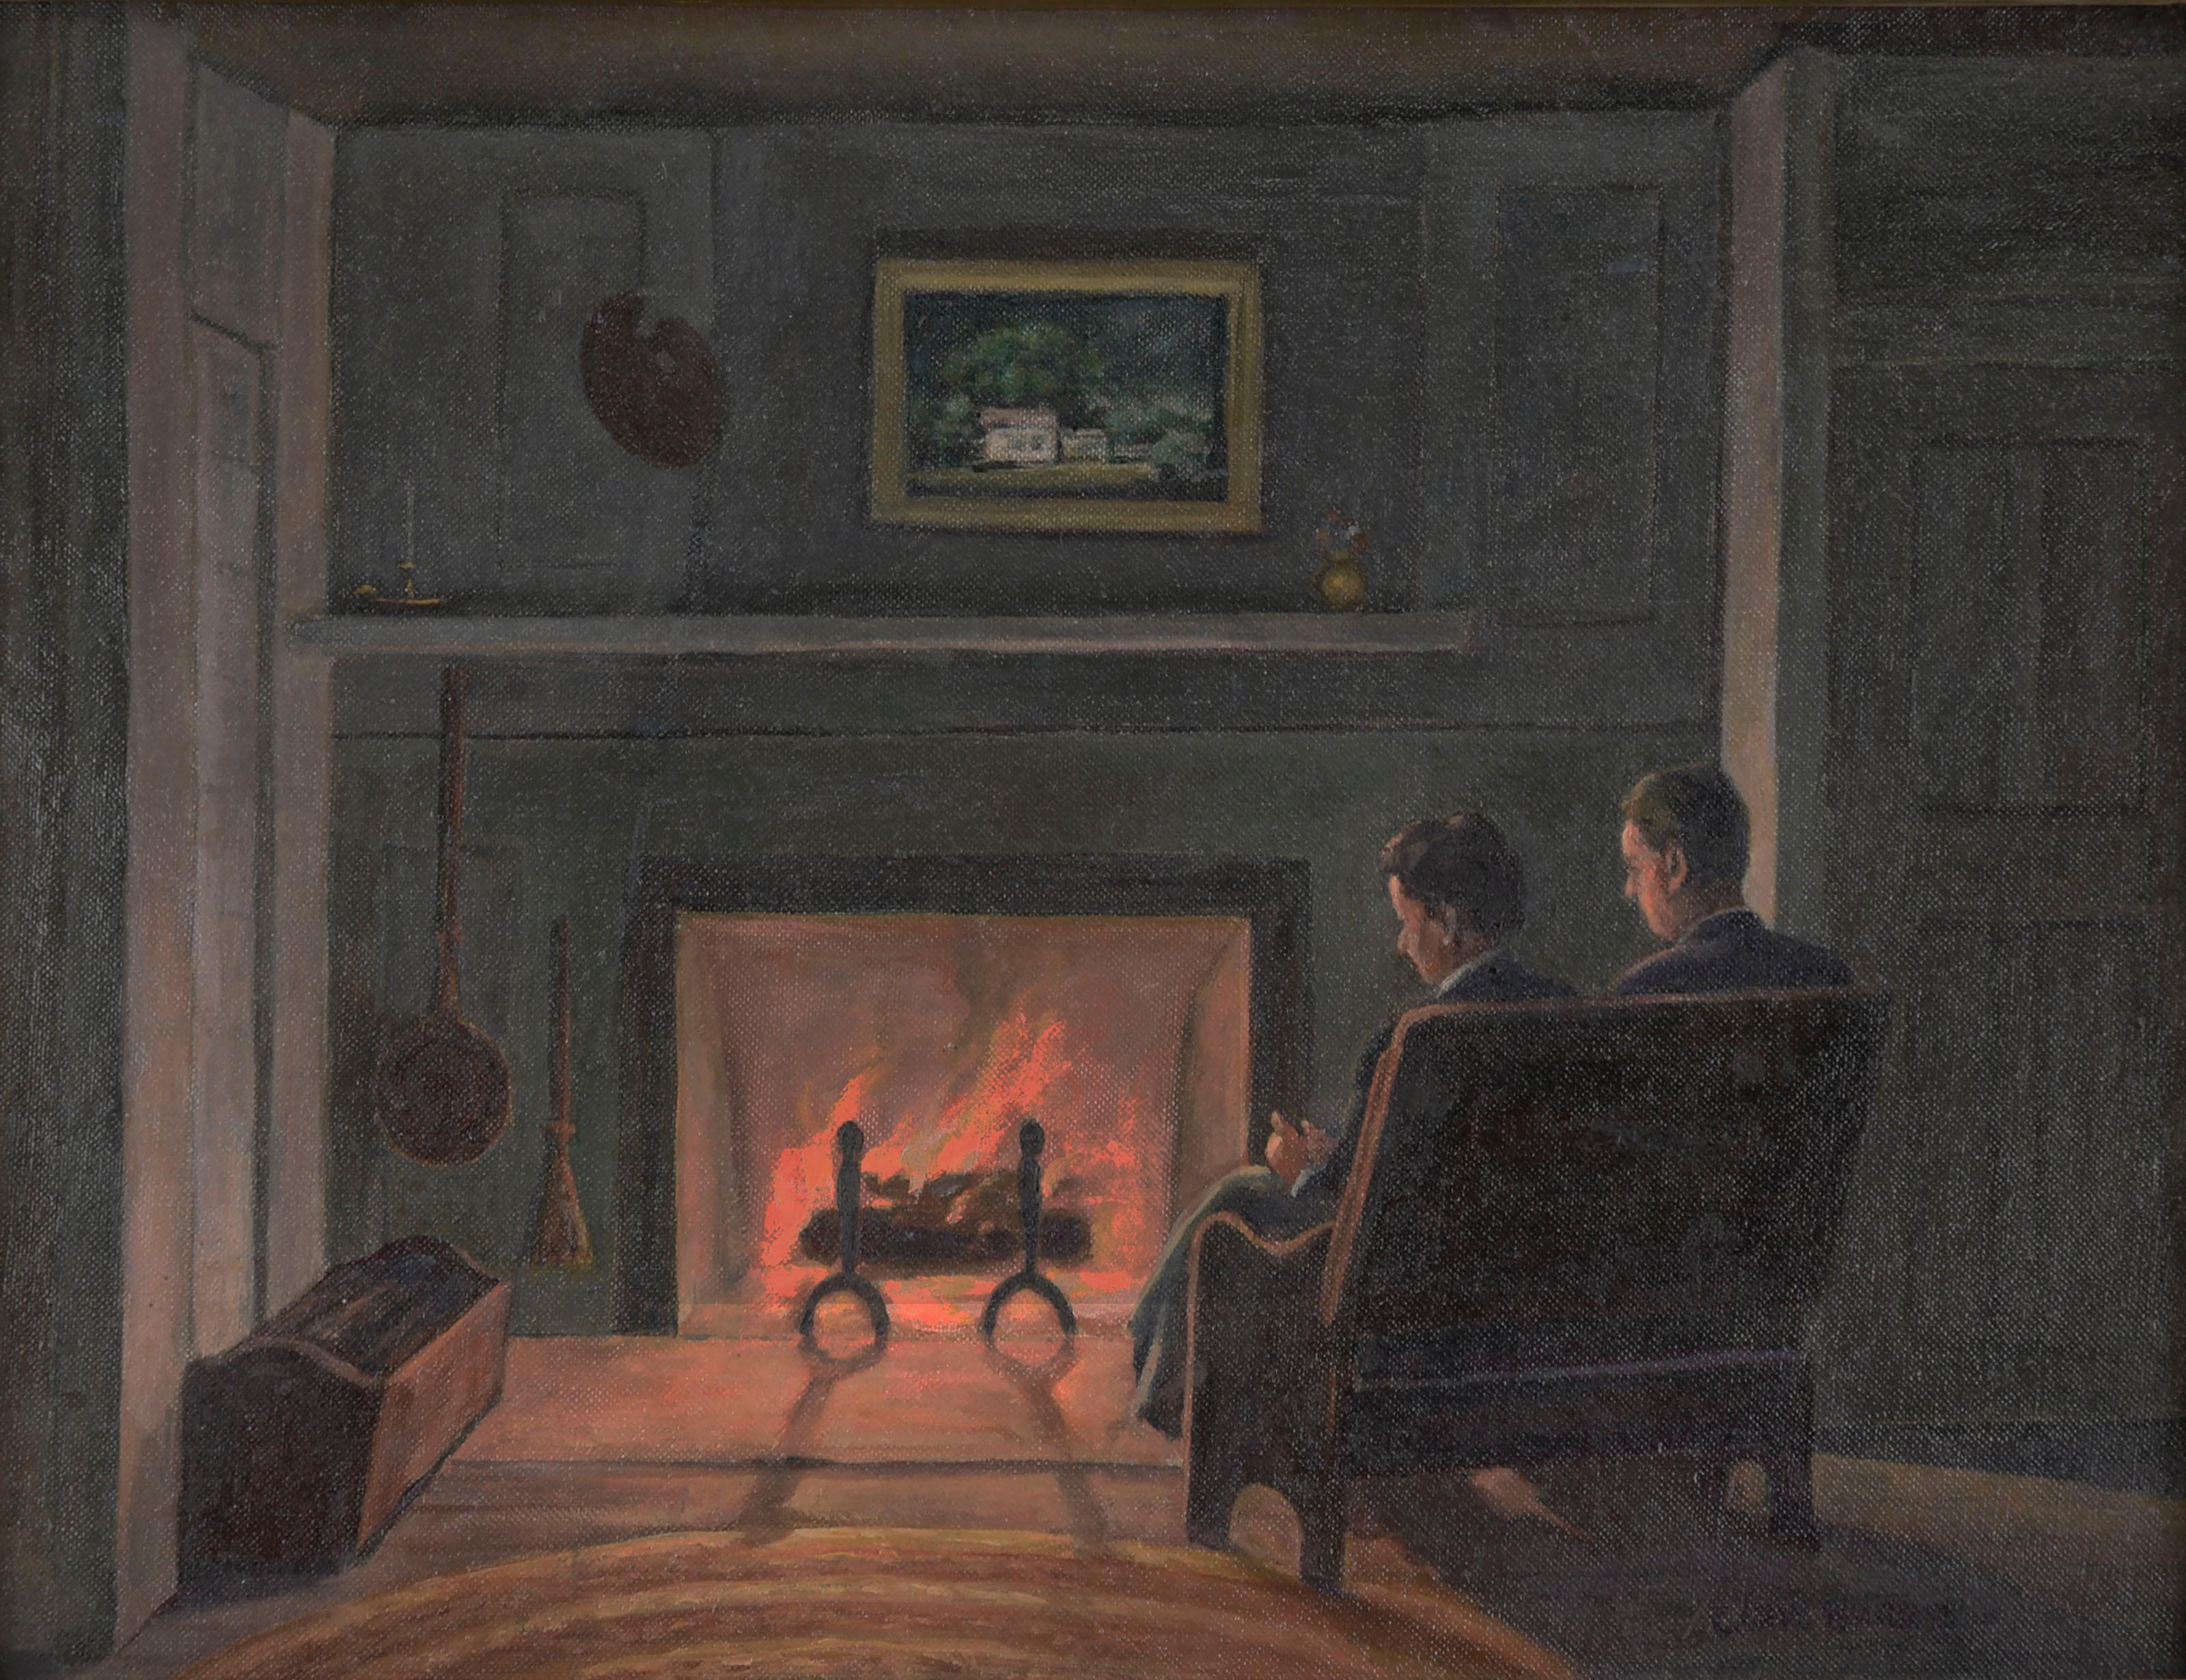 New Yorker Interieur der 1940er Jahre - eine Abendszene mit einem Künstler und seiner Ehefrau  – Painting von Caryl Harris